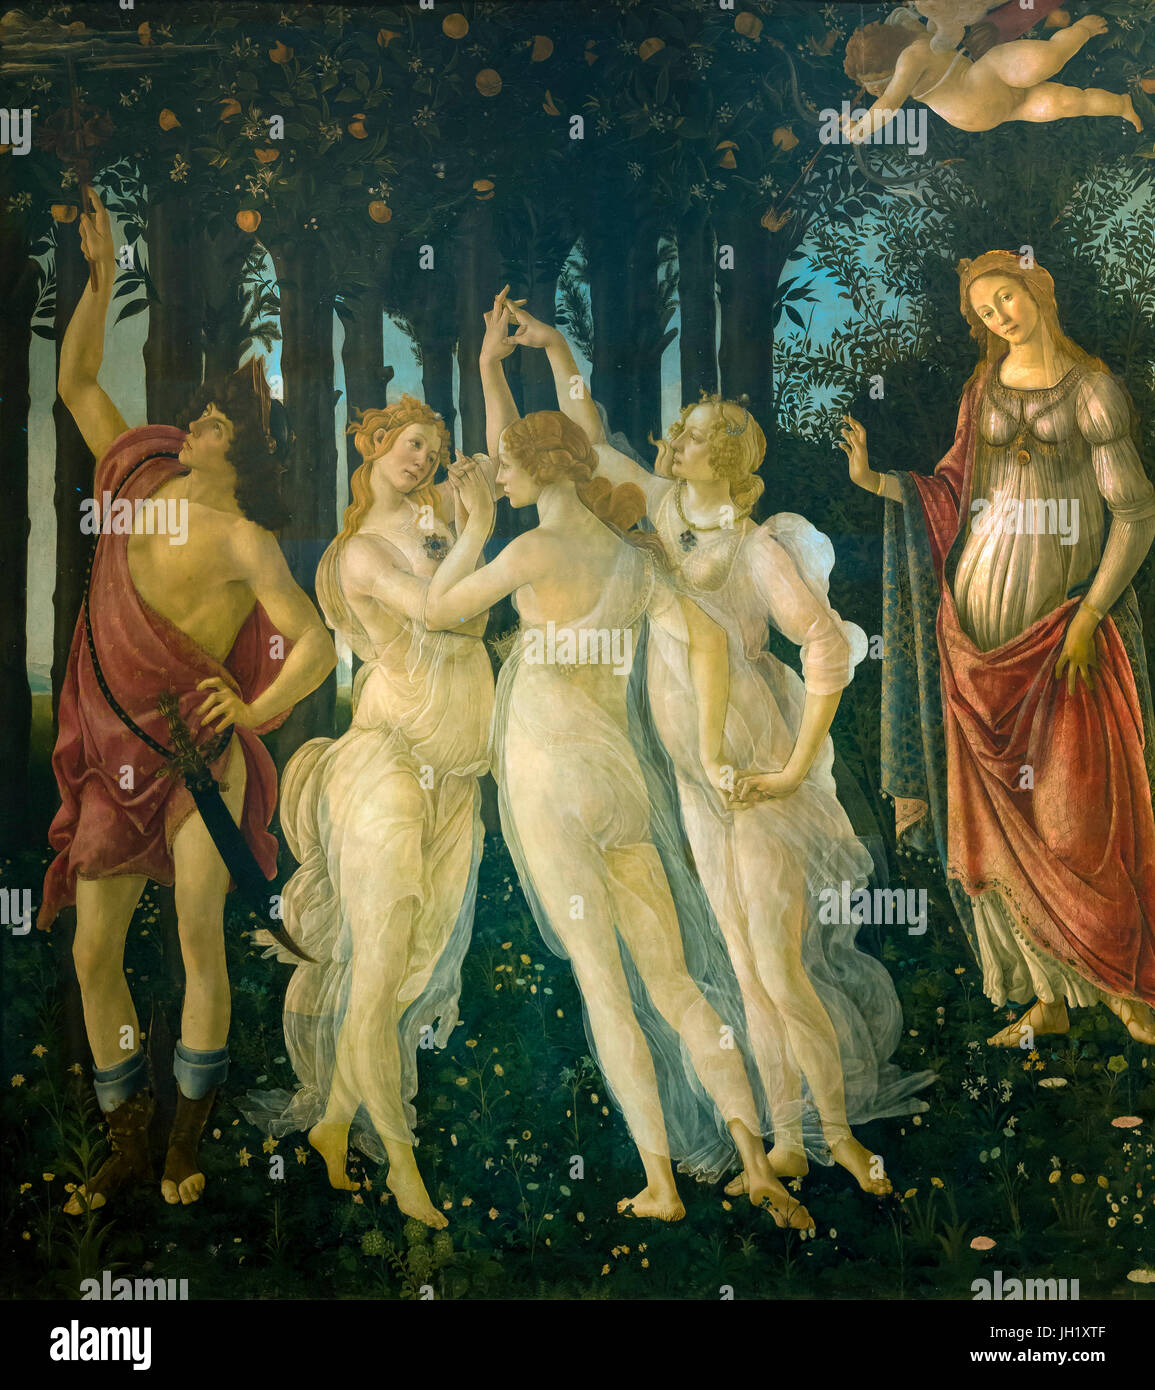 Tres Gracias, detalle de Primavera, alegoría de la primavera, témpera,  pintura panel de Sandro Botticelli, circa1482, la Galería de los Uffizi,  Florencia, Toscana Fotografía de stock - Alamy